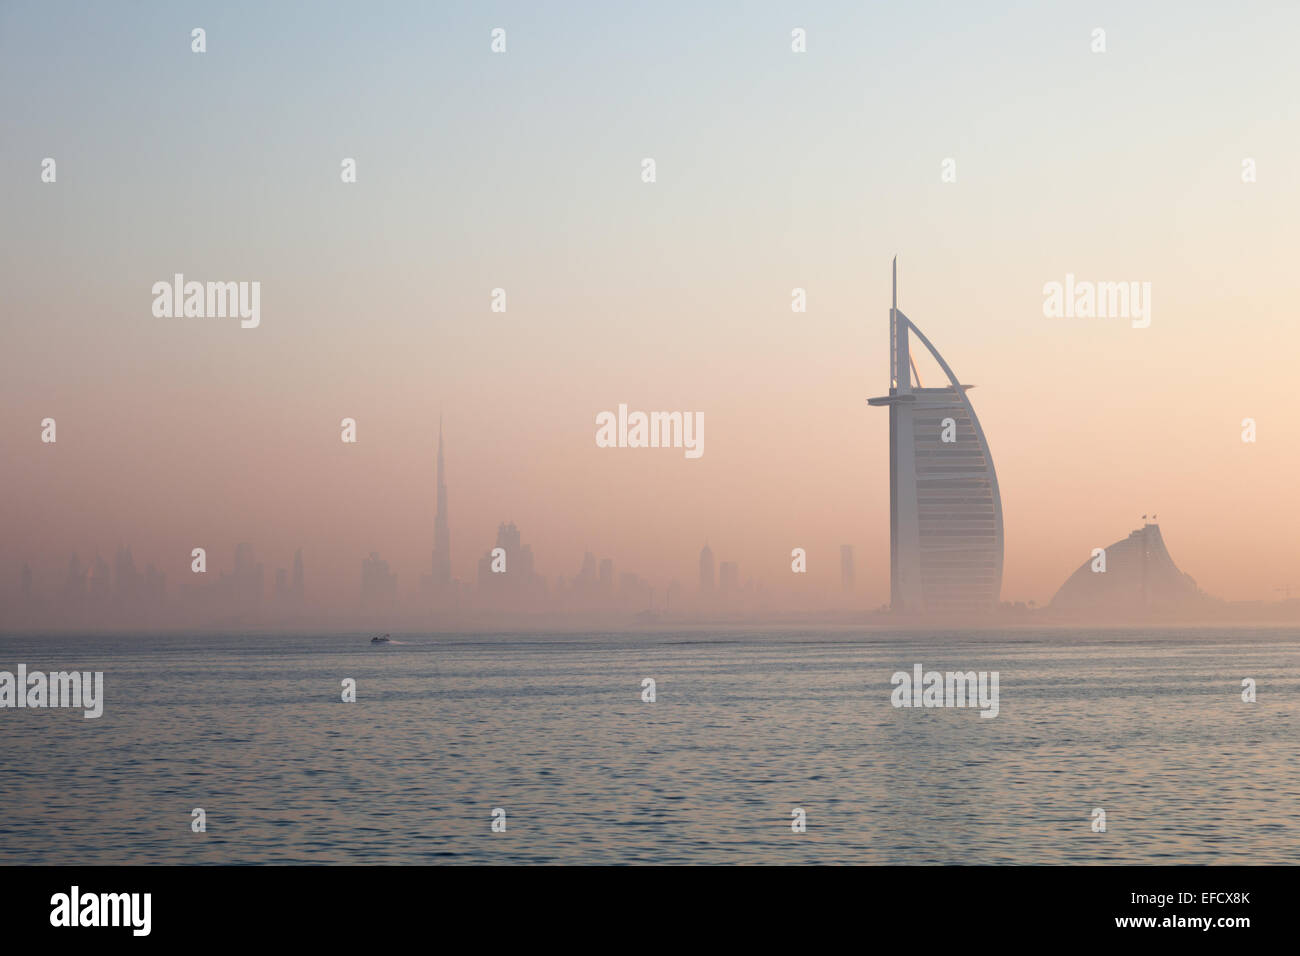 Skyline of Dubai, United Arab Emirates Stock Photo